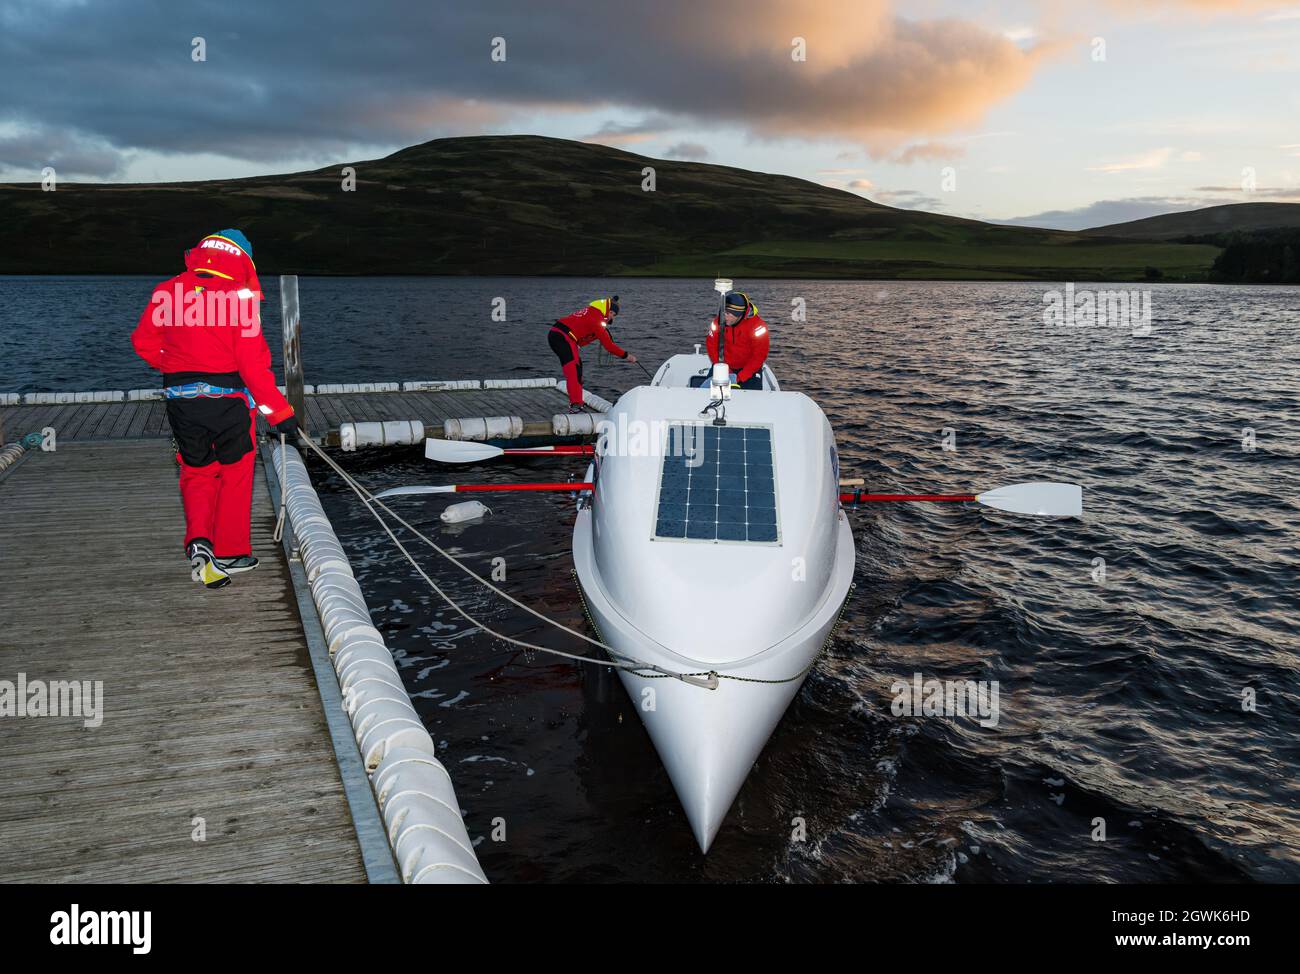 Gli uomini lanciano la barca a remi sull'oceano nella riserva Whiteadder per una sessione di allenamento per la sfida atlantica, East Lothian, Scozia, Regno Unito Foto Stock